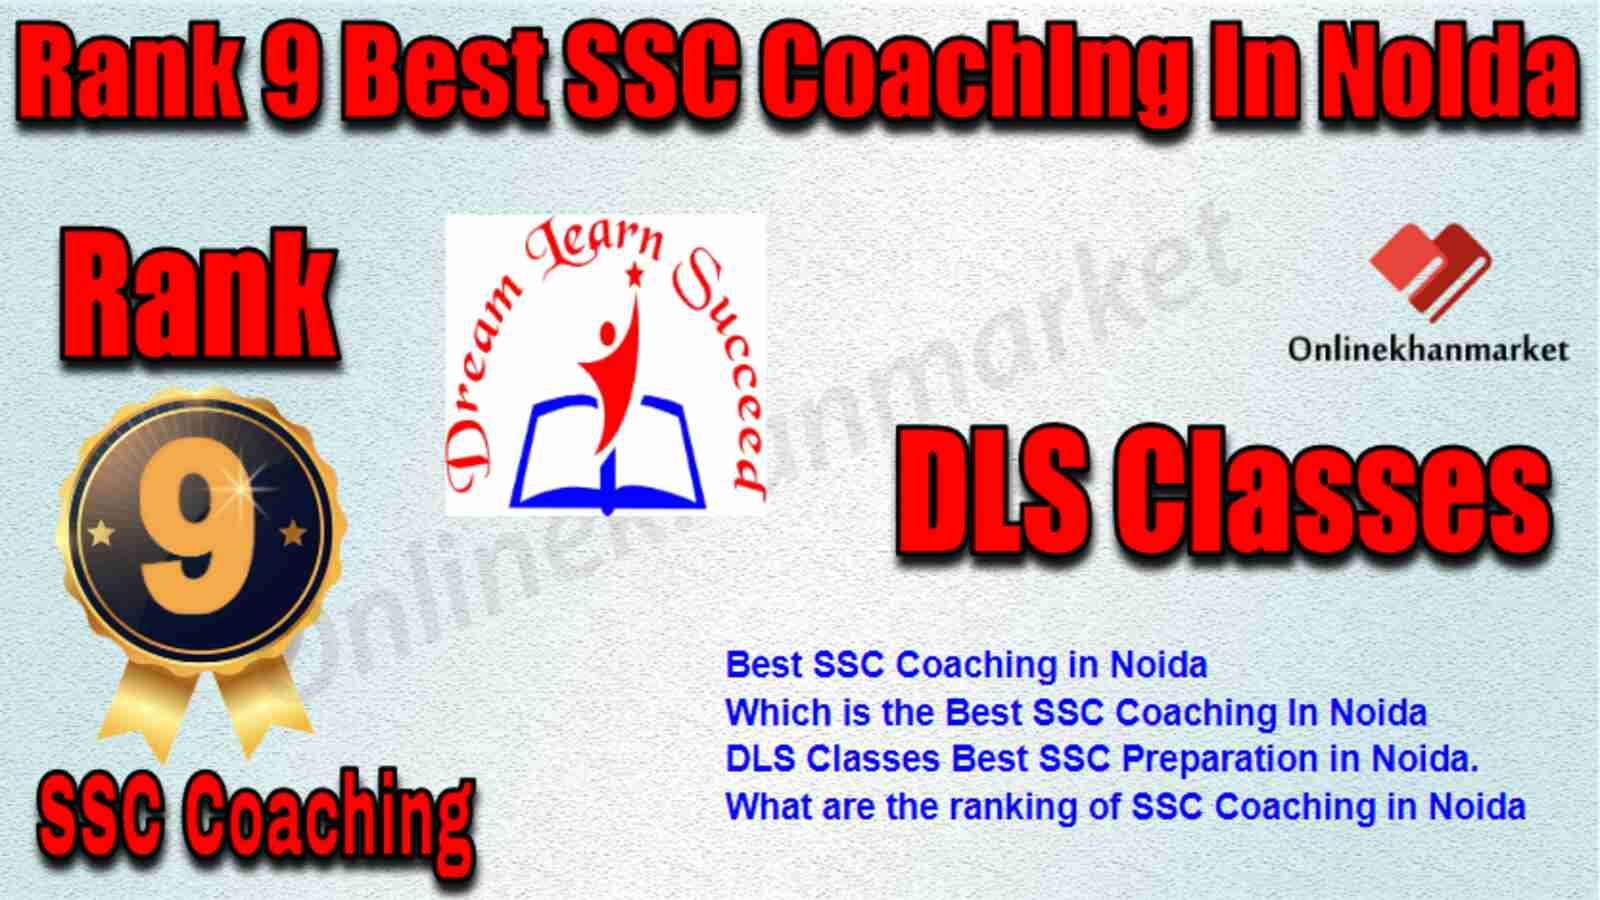 Rank 9 Best SSC Coaching in Noida